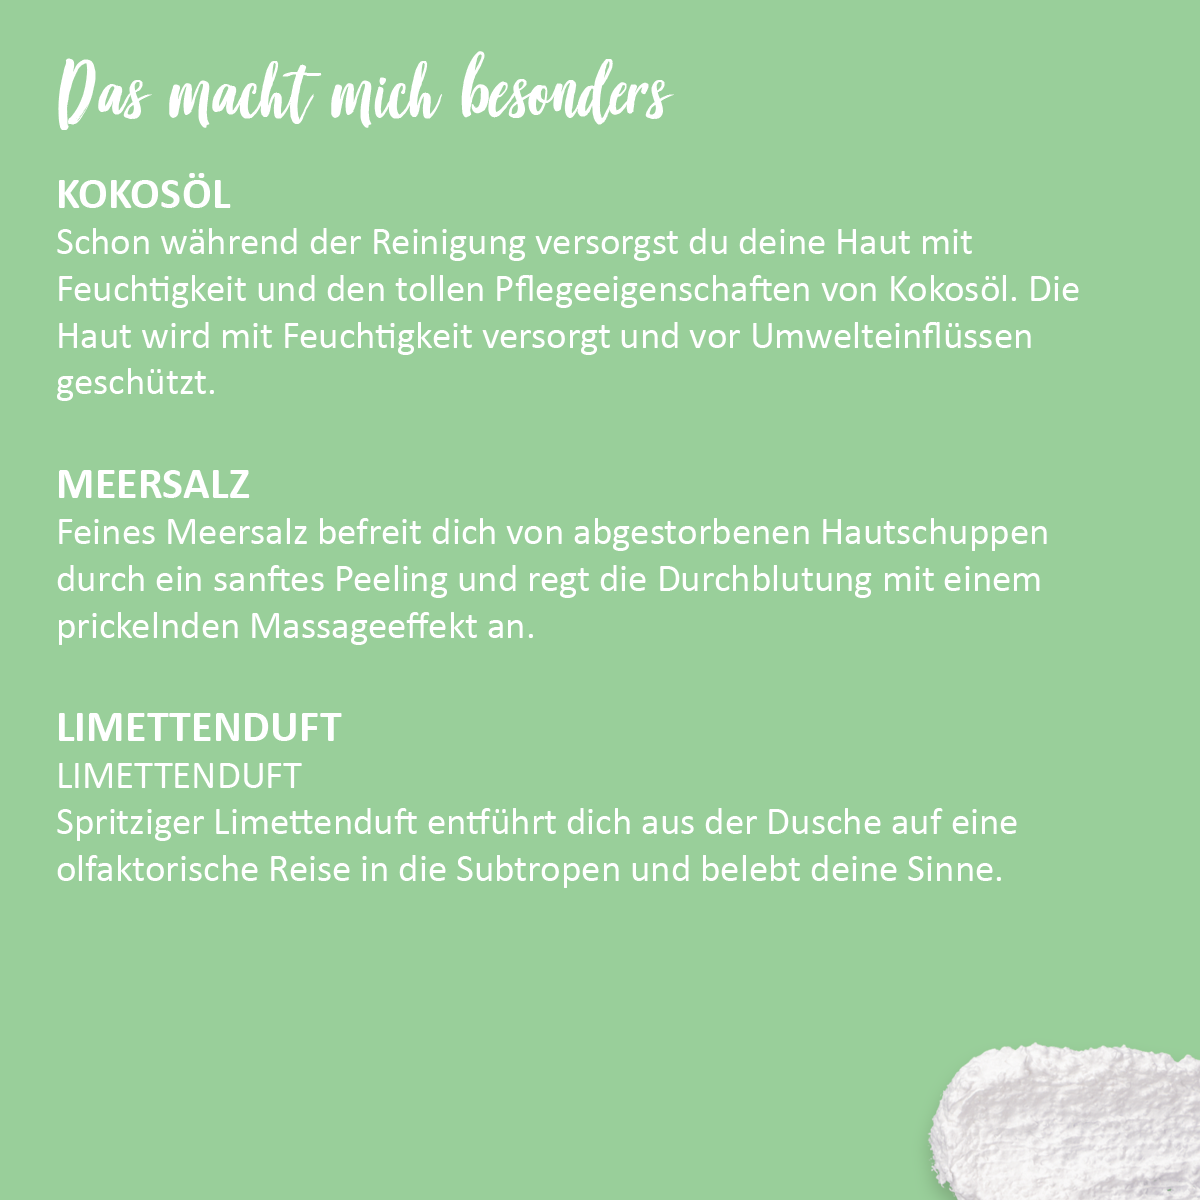 Duschfluff Limette